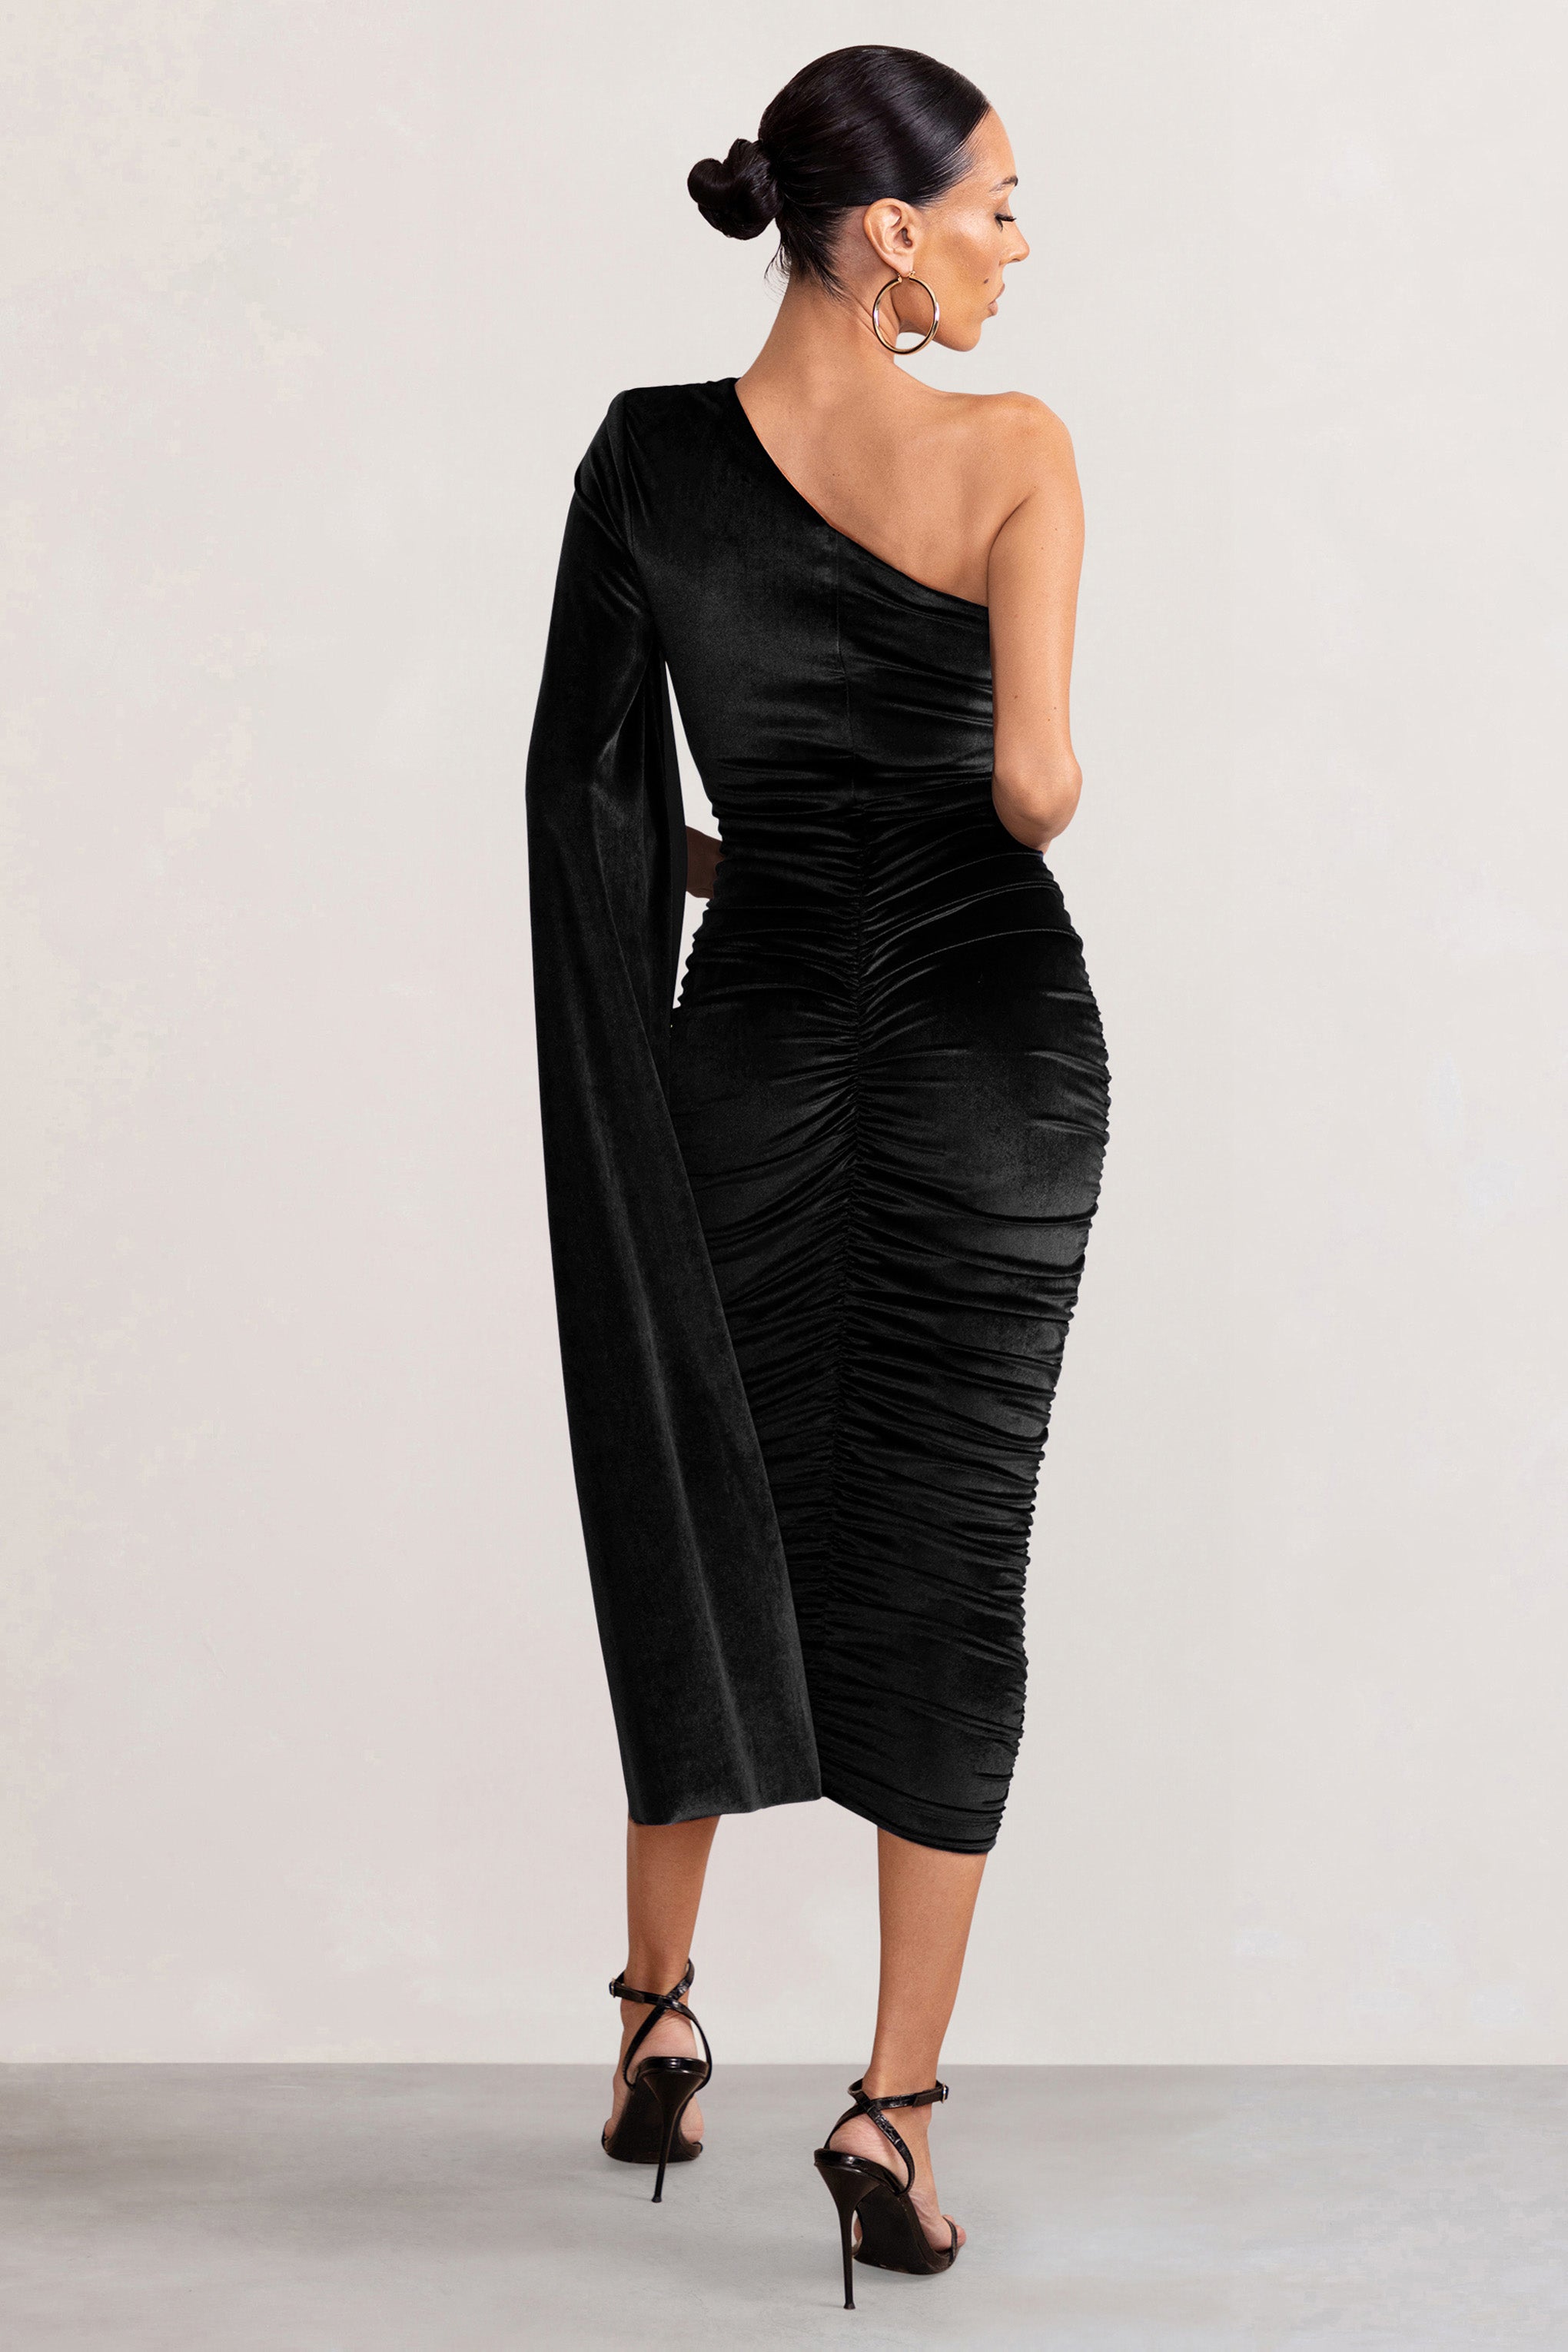 Gianna Black Velvet One Shoulder Cape Bodycon Midi Dress